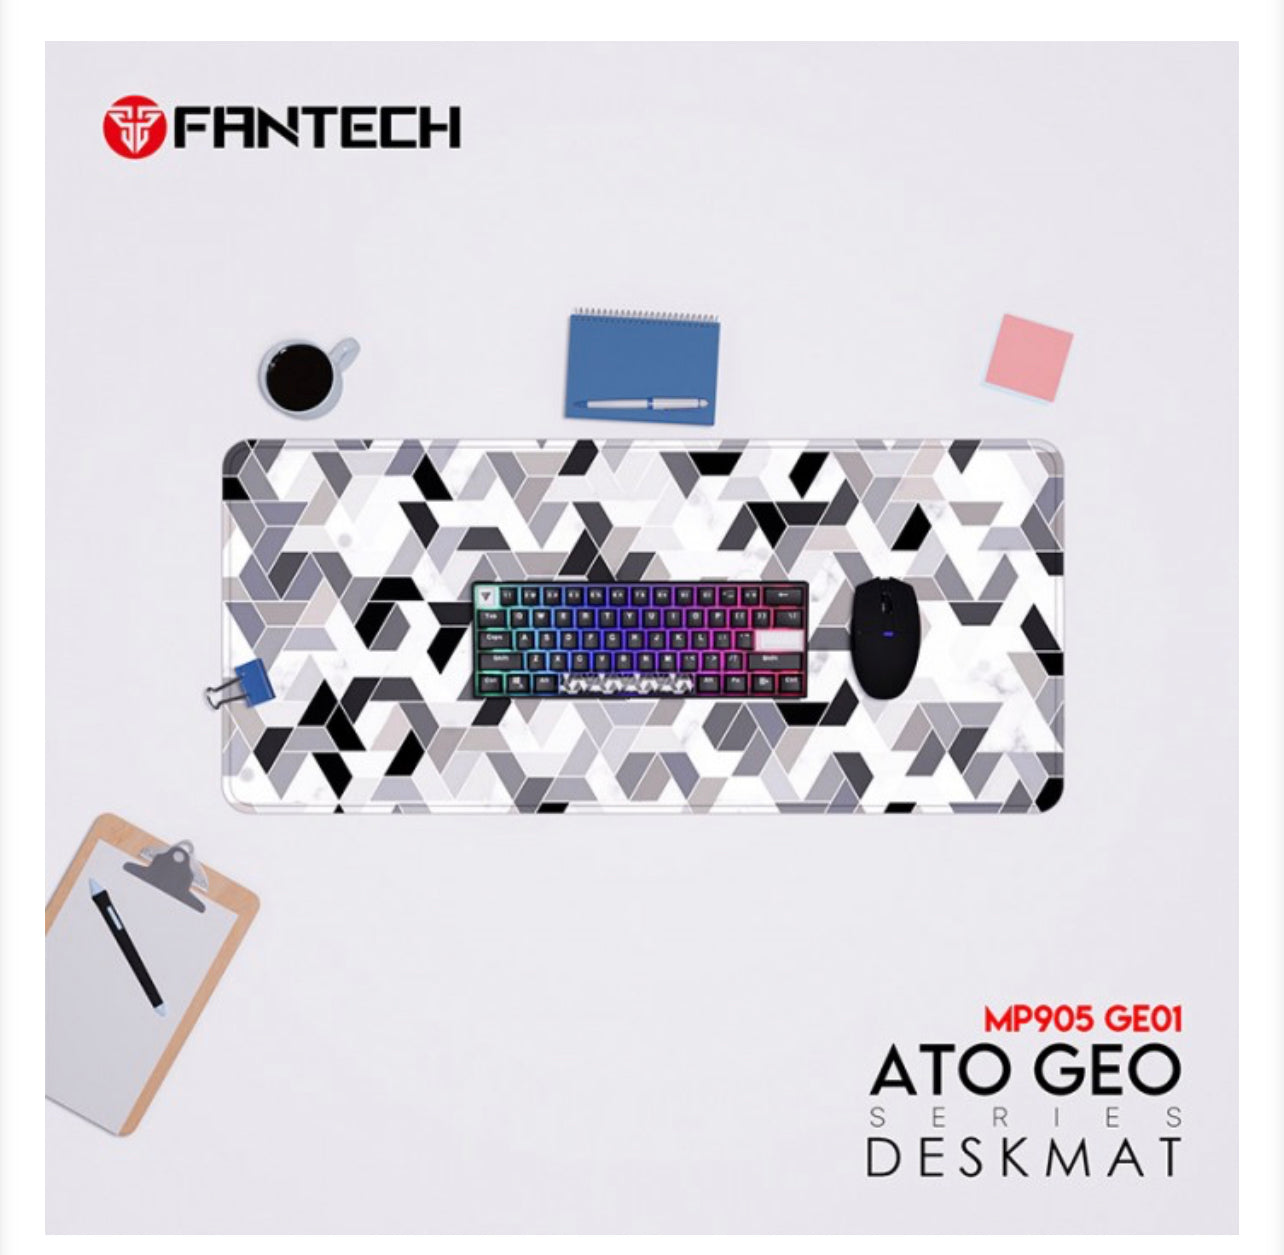 Fantech Desk Mat MP905 GE01